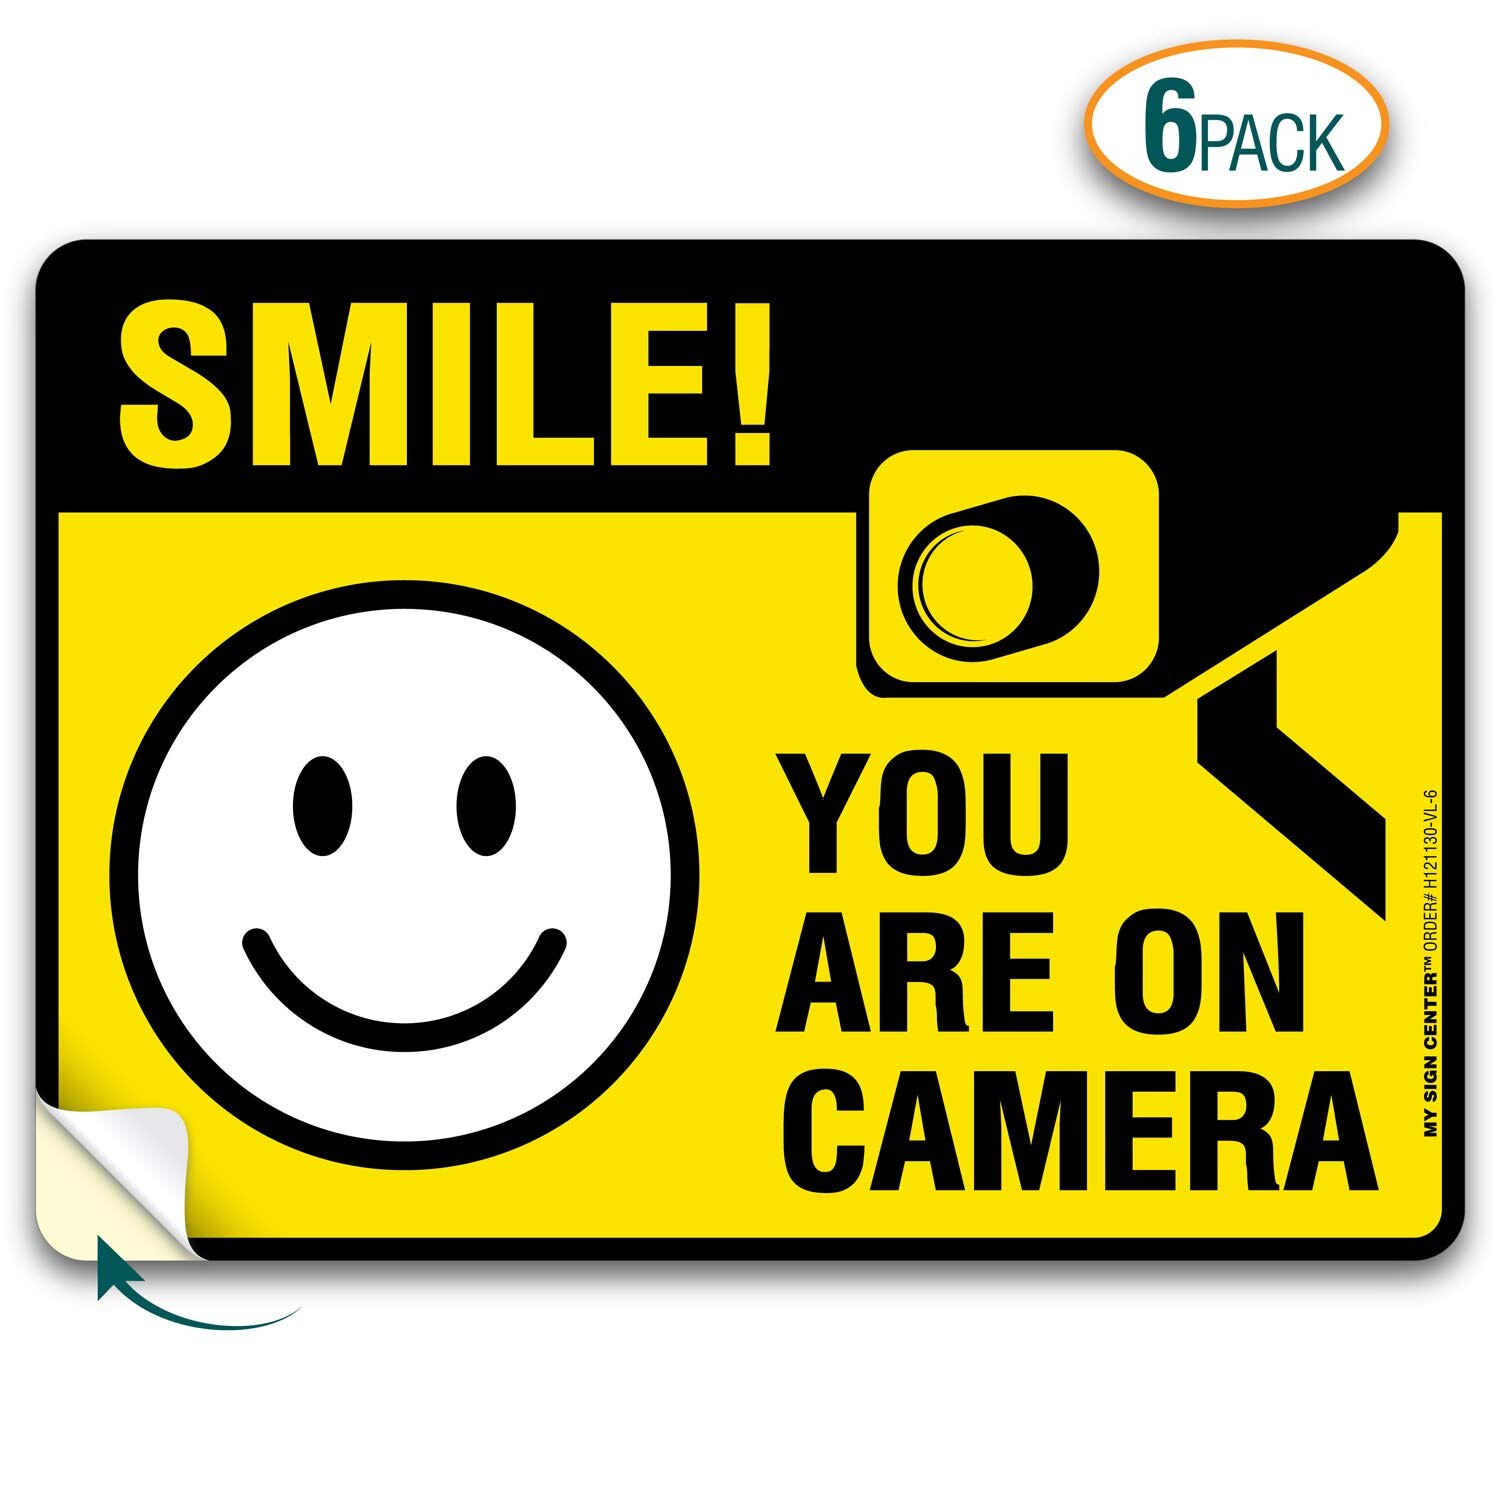 Voor X6 Glimlach Je Op Camera Sticker, Premium 4 Mil Zelfklevende Vinyl Sticker, indoor En Outdoor Gebruik, 2.5 "X 3.5"